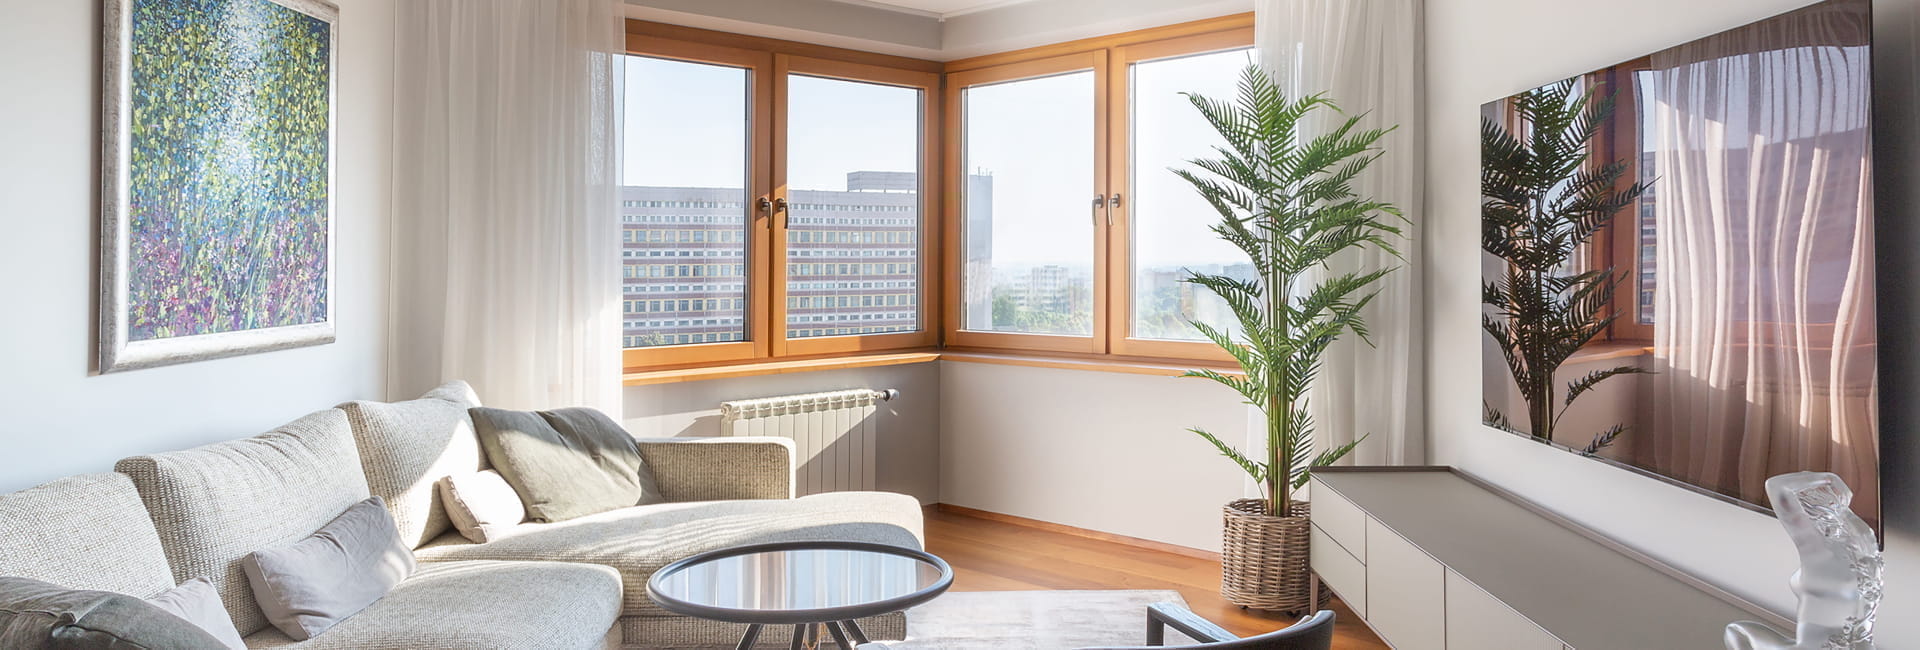 Дерево-алюминиевые окна из лиственницы в квартире